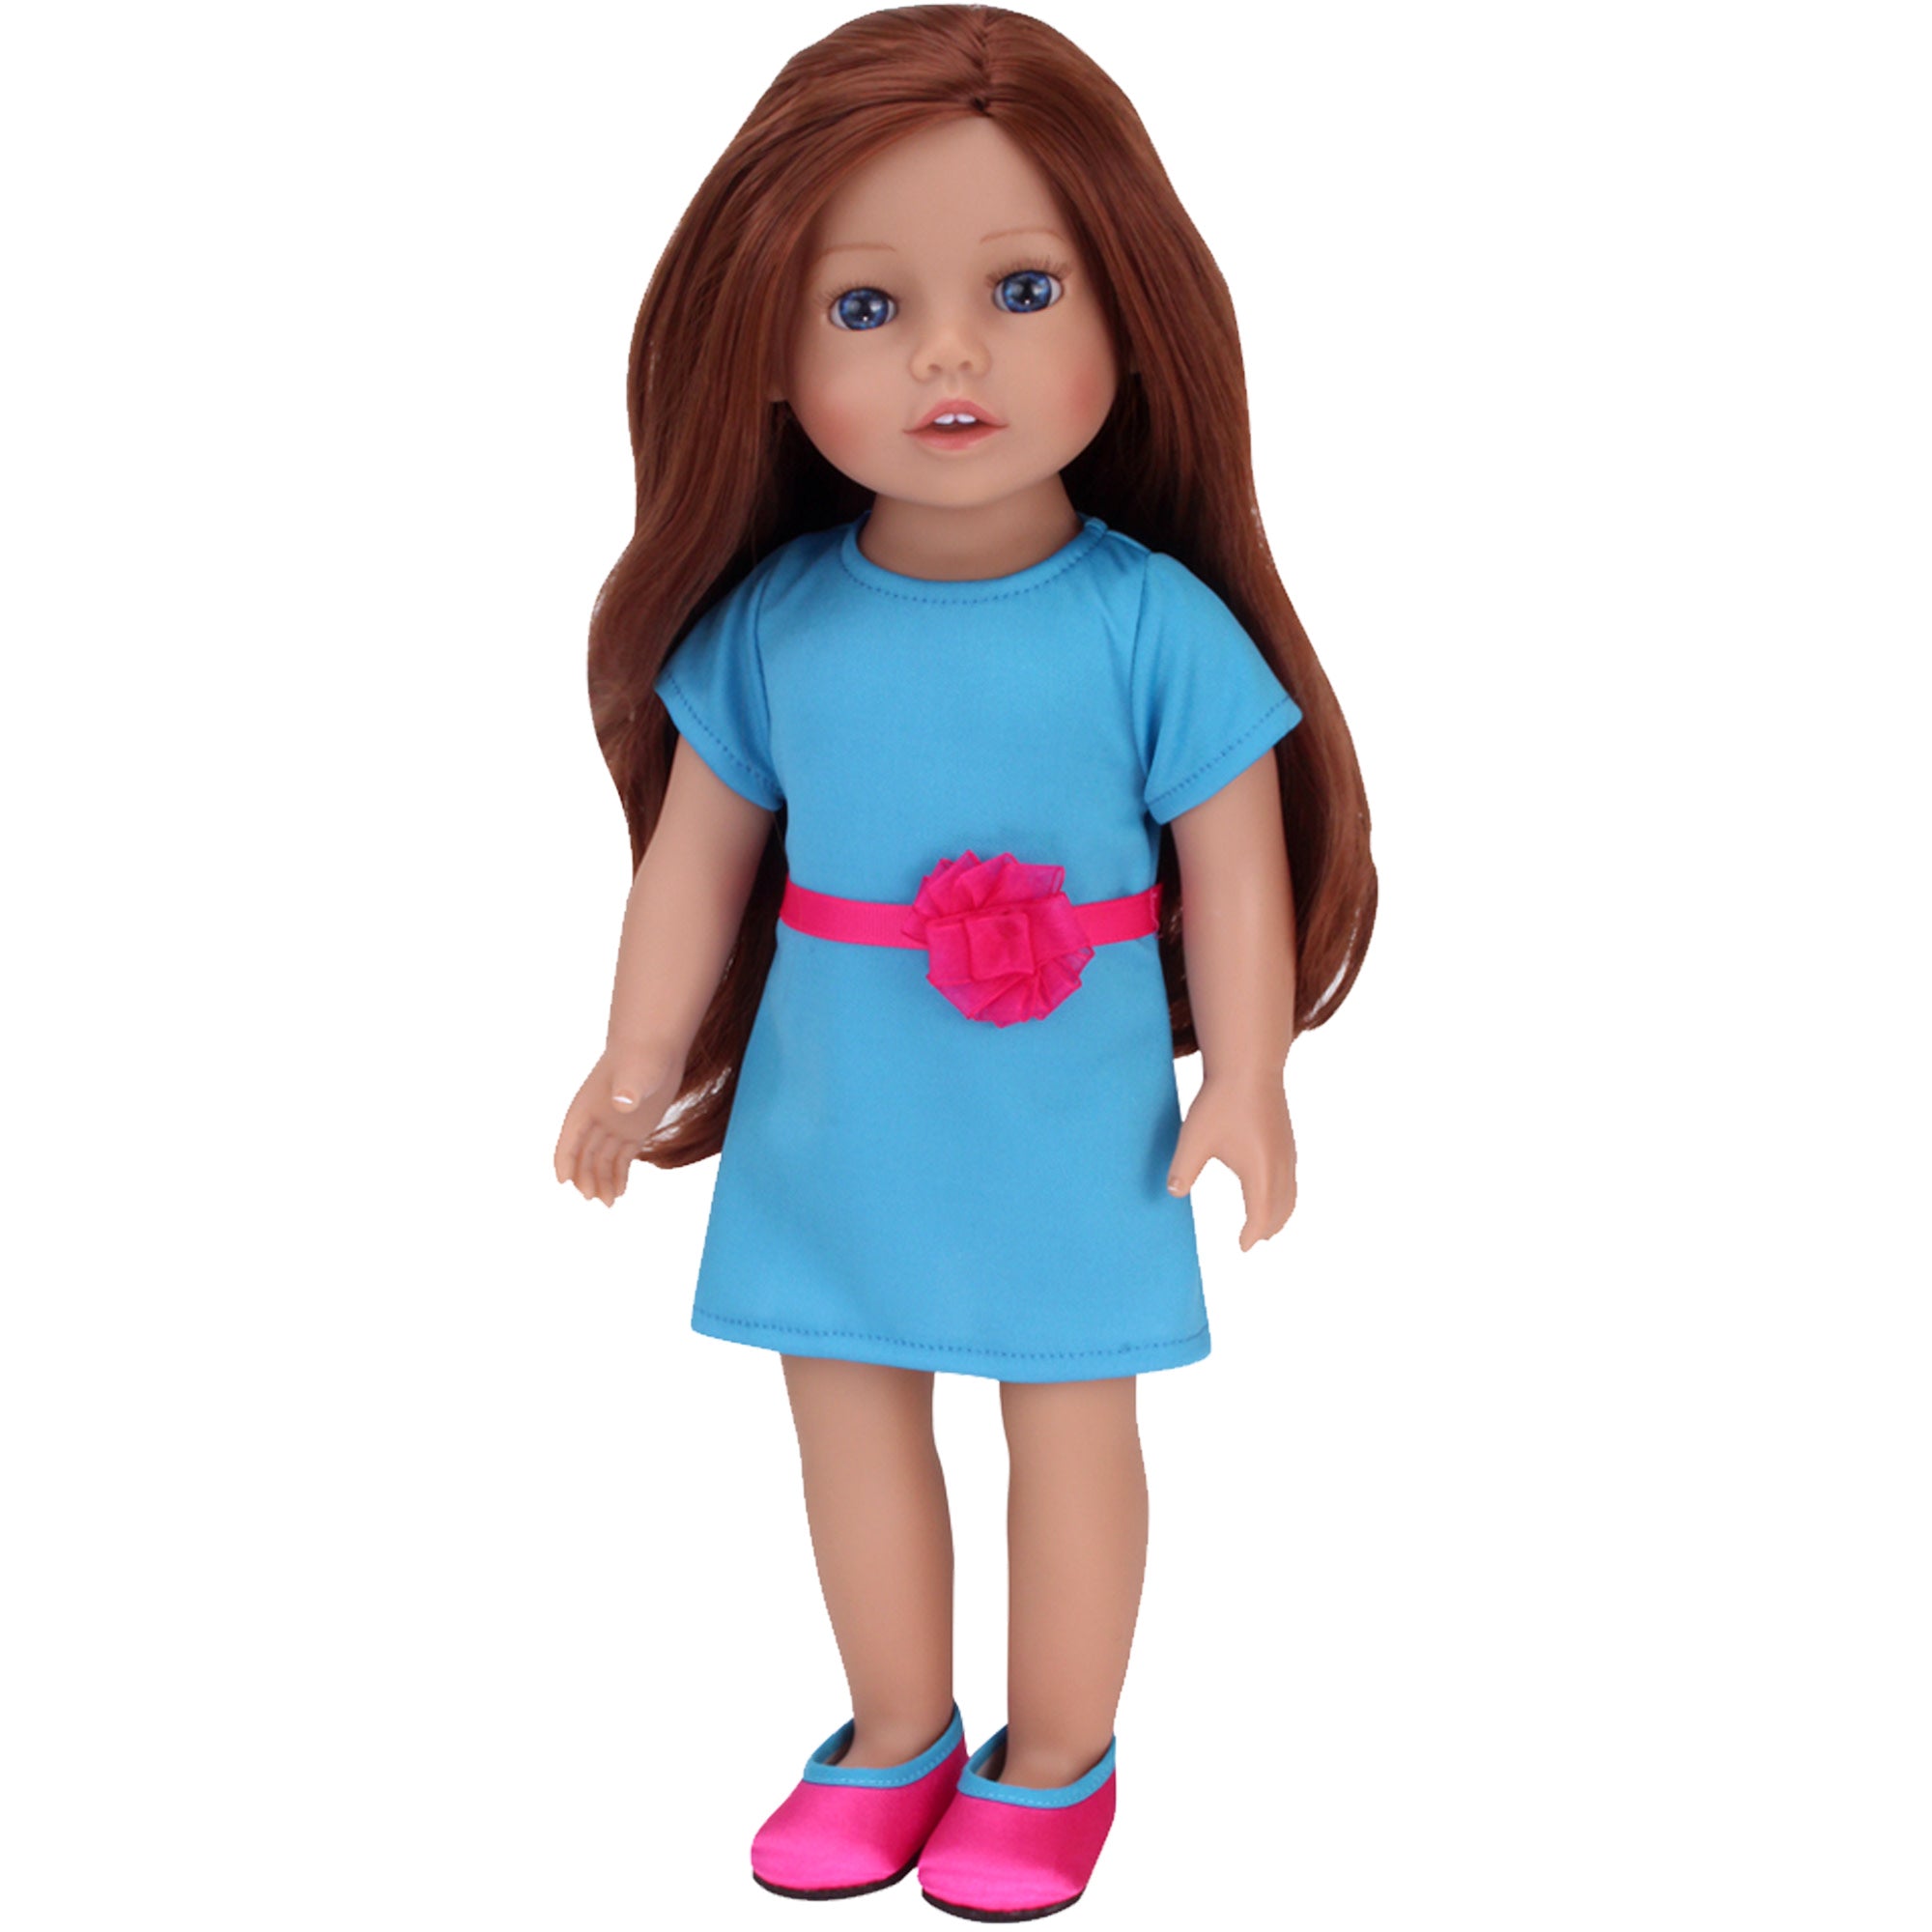 Sophia's Posable 18" All Vinyl Auburn Hair Doll "Hailey" with Blue Eyes